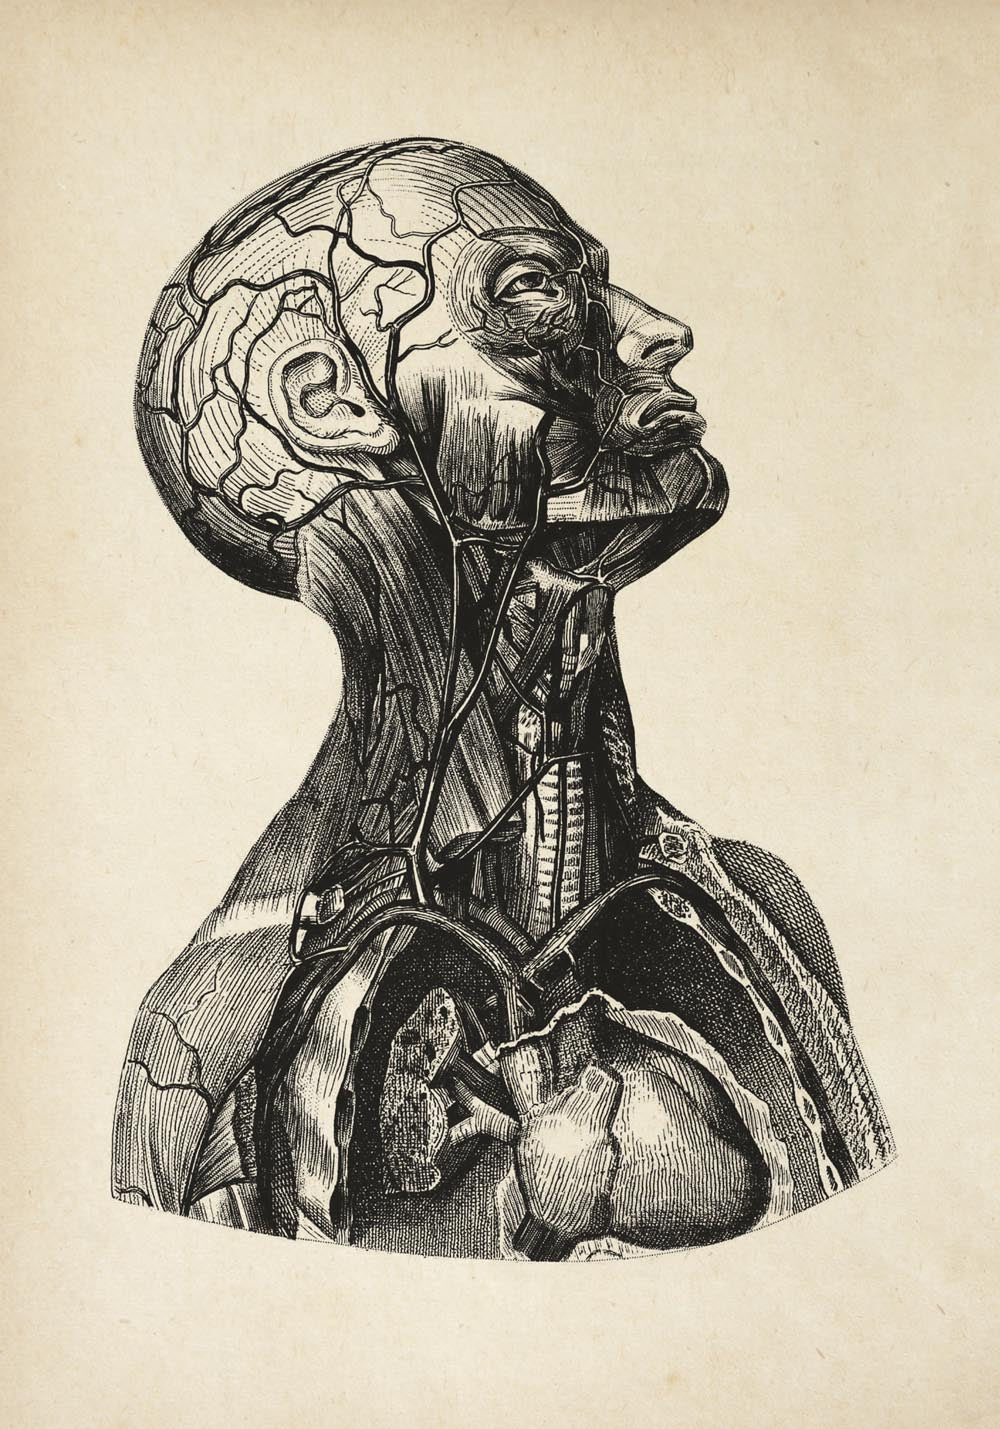 Vintage Anatomy Posters "Head" Set of 3 Prints